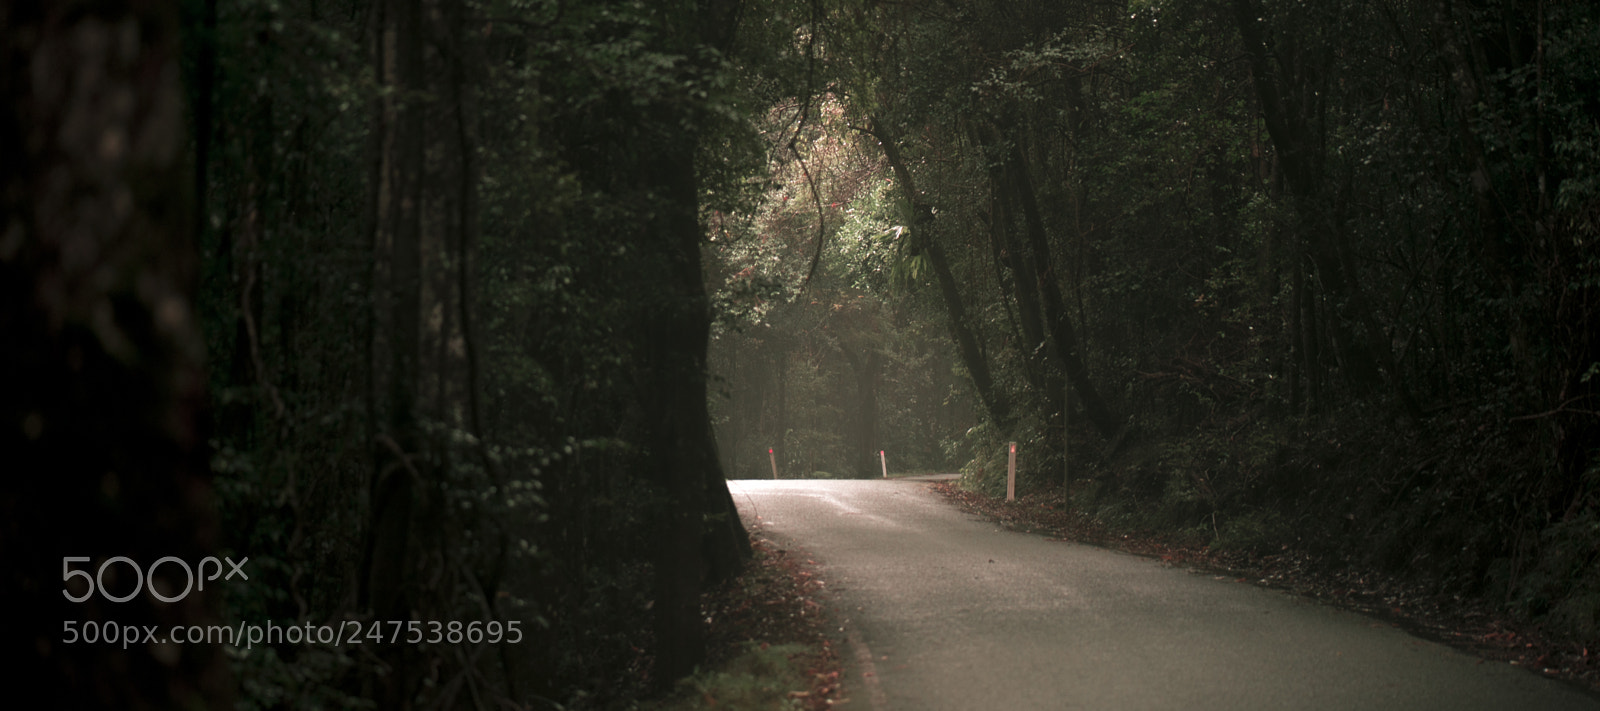 Nikon D800 sample photo. Moody hazy road in photography